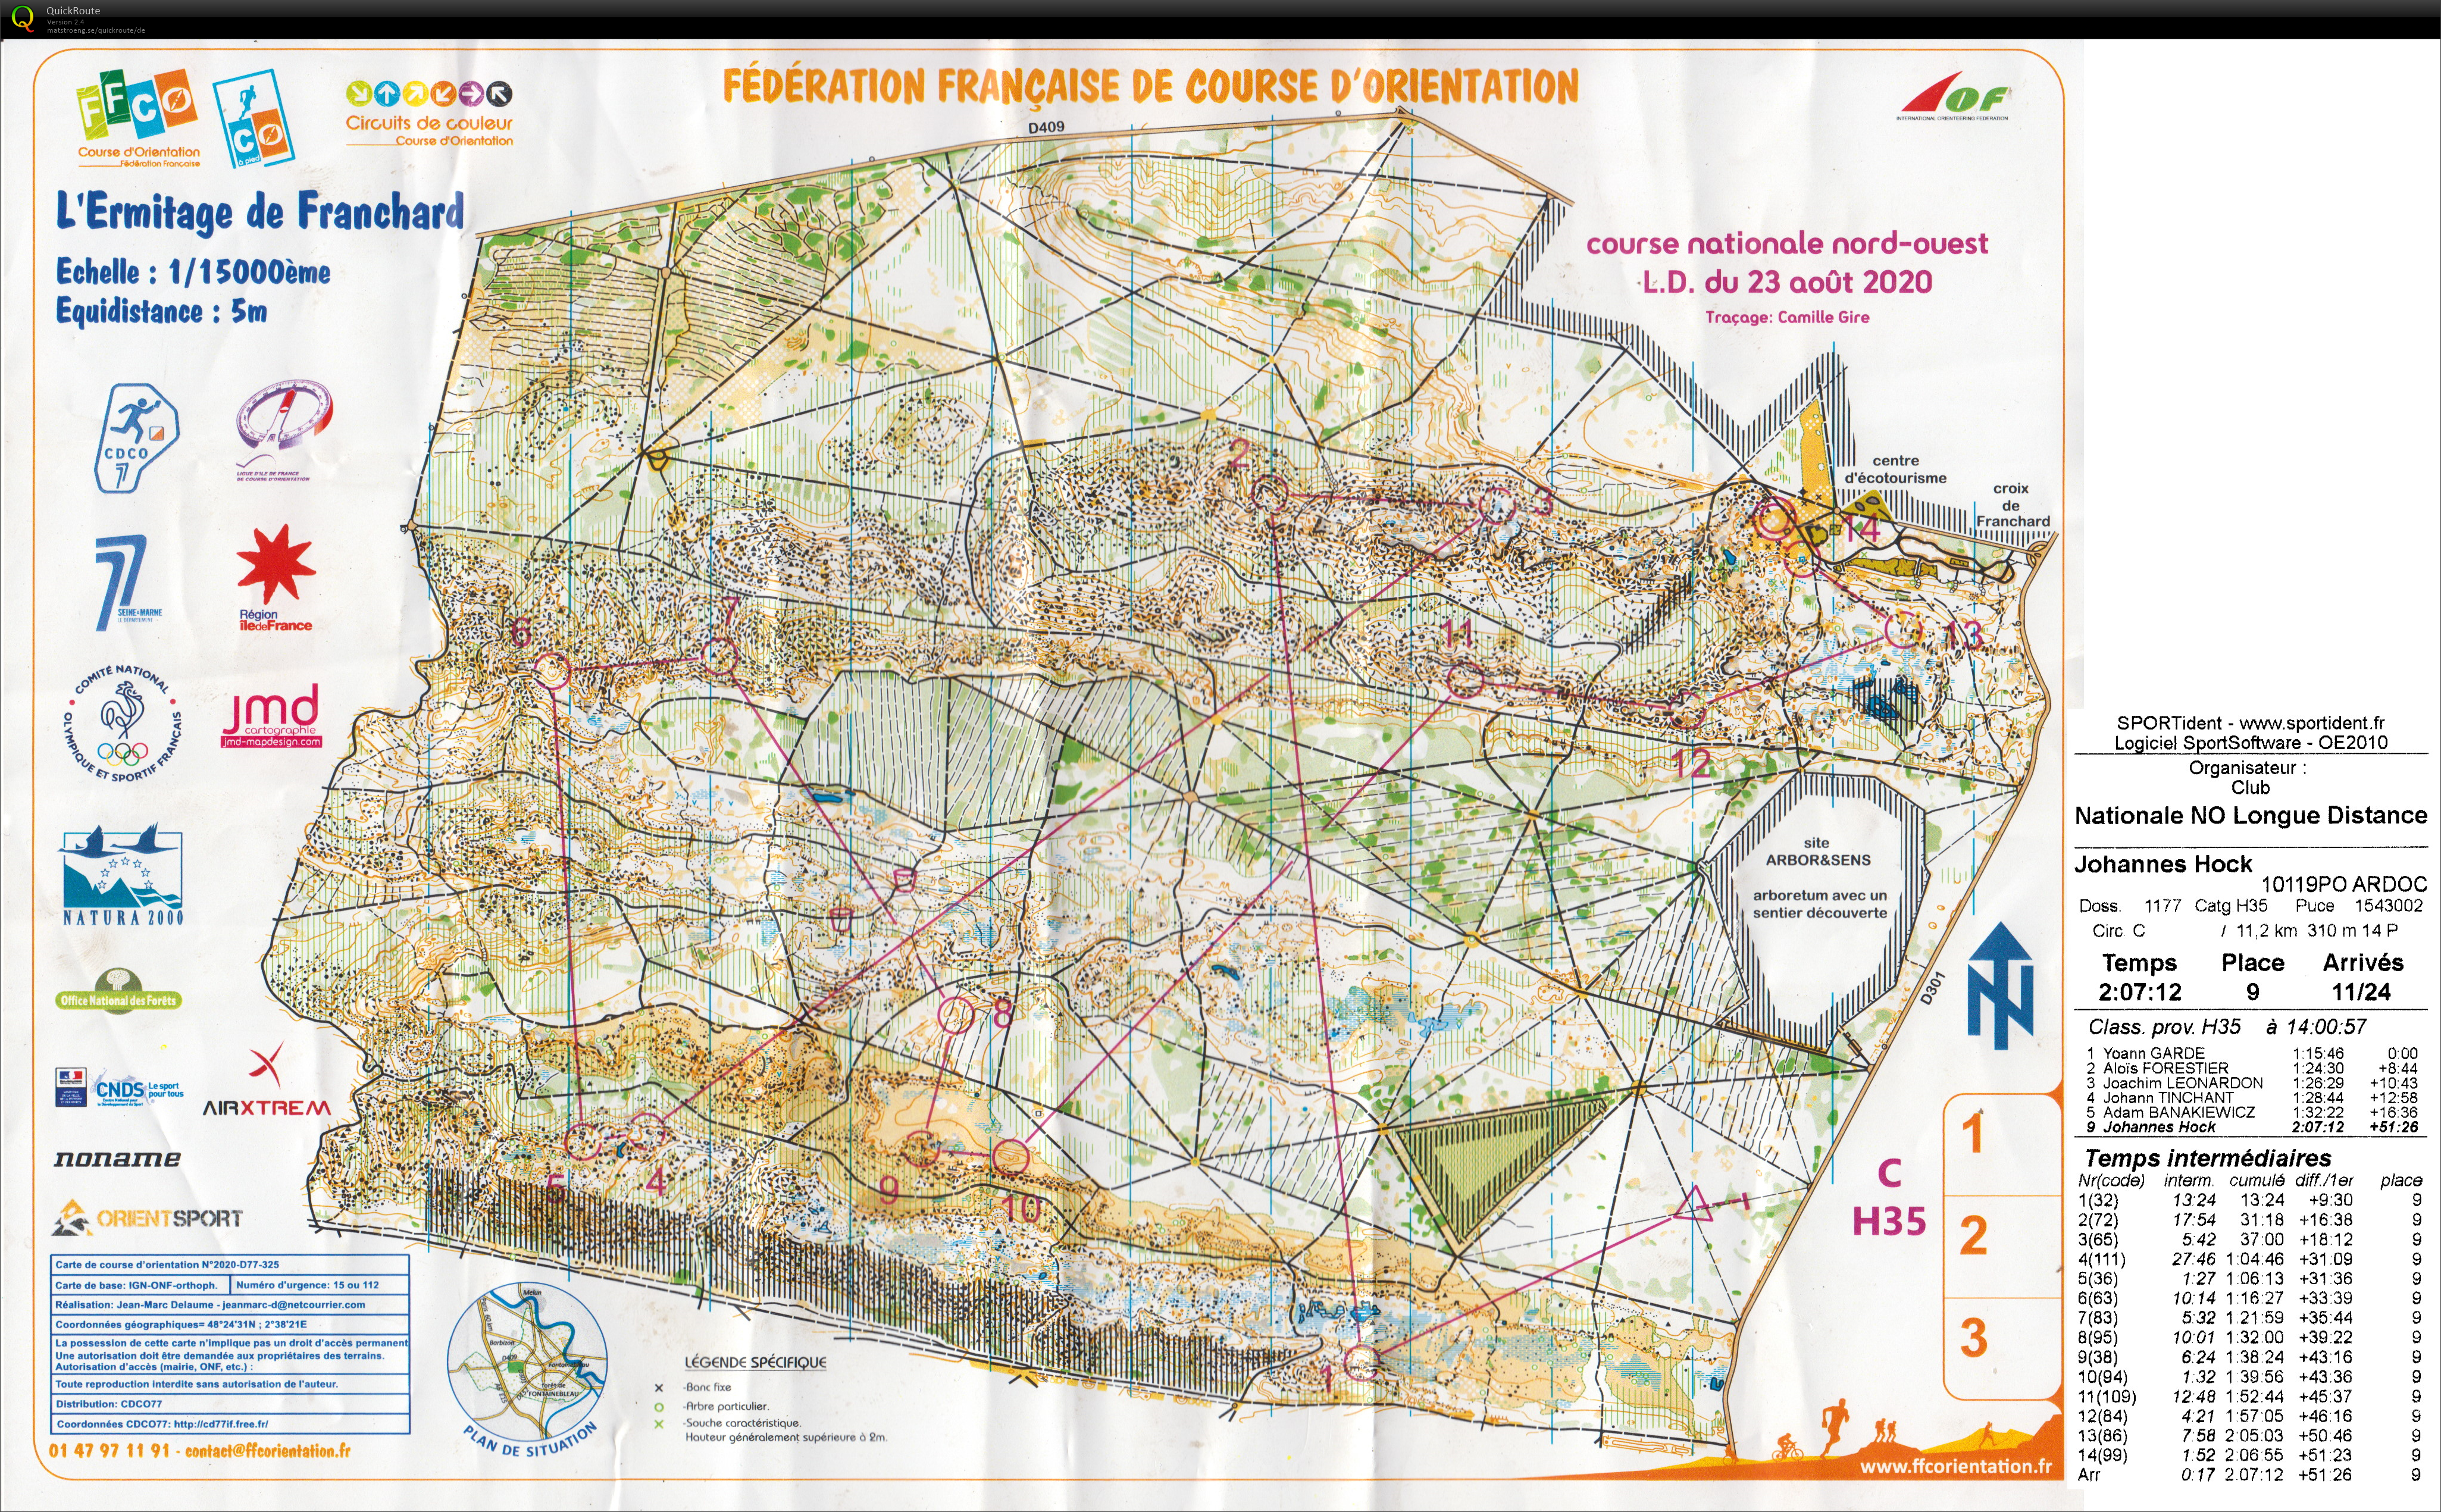 Course nationale L.D. Fontainebleau (23.08.2020)